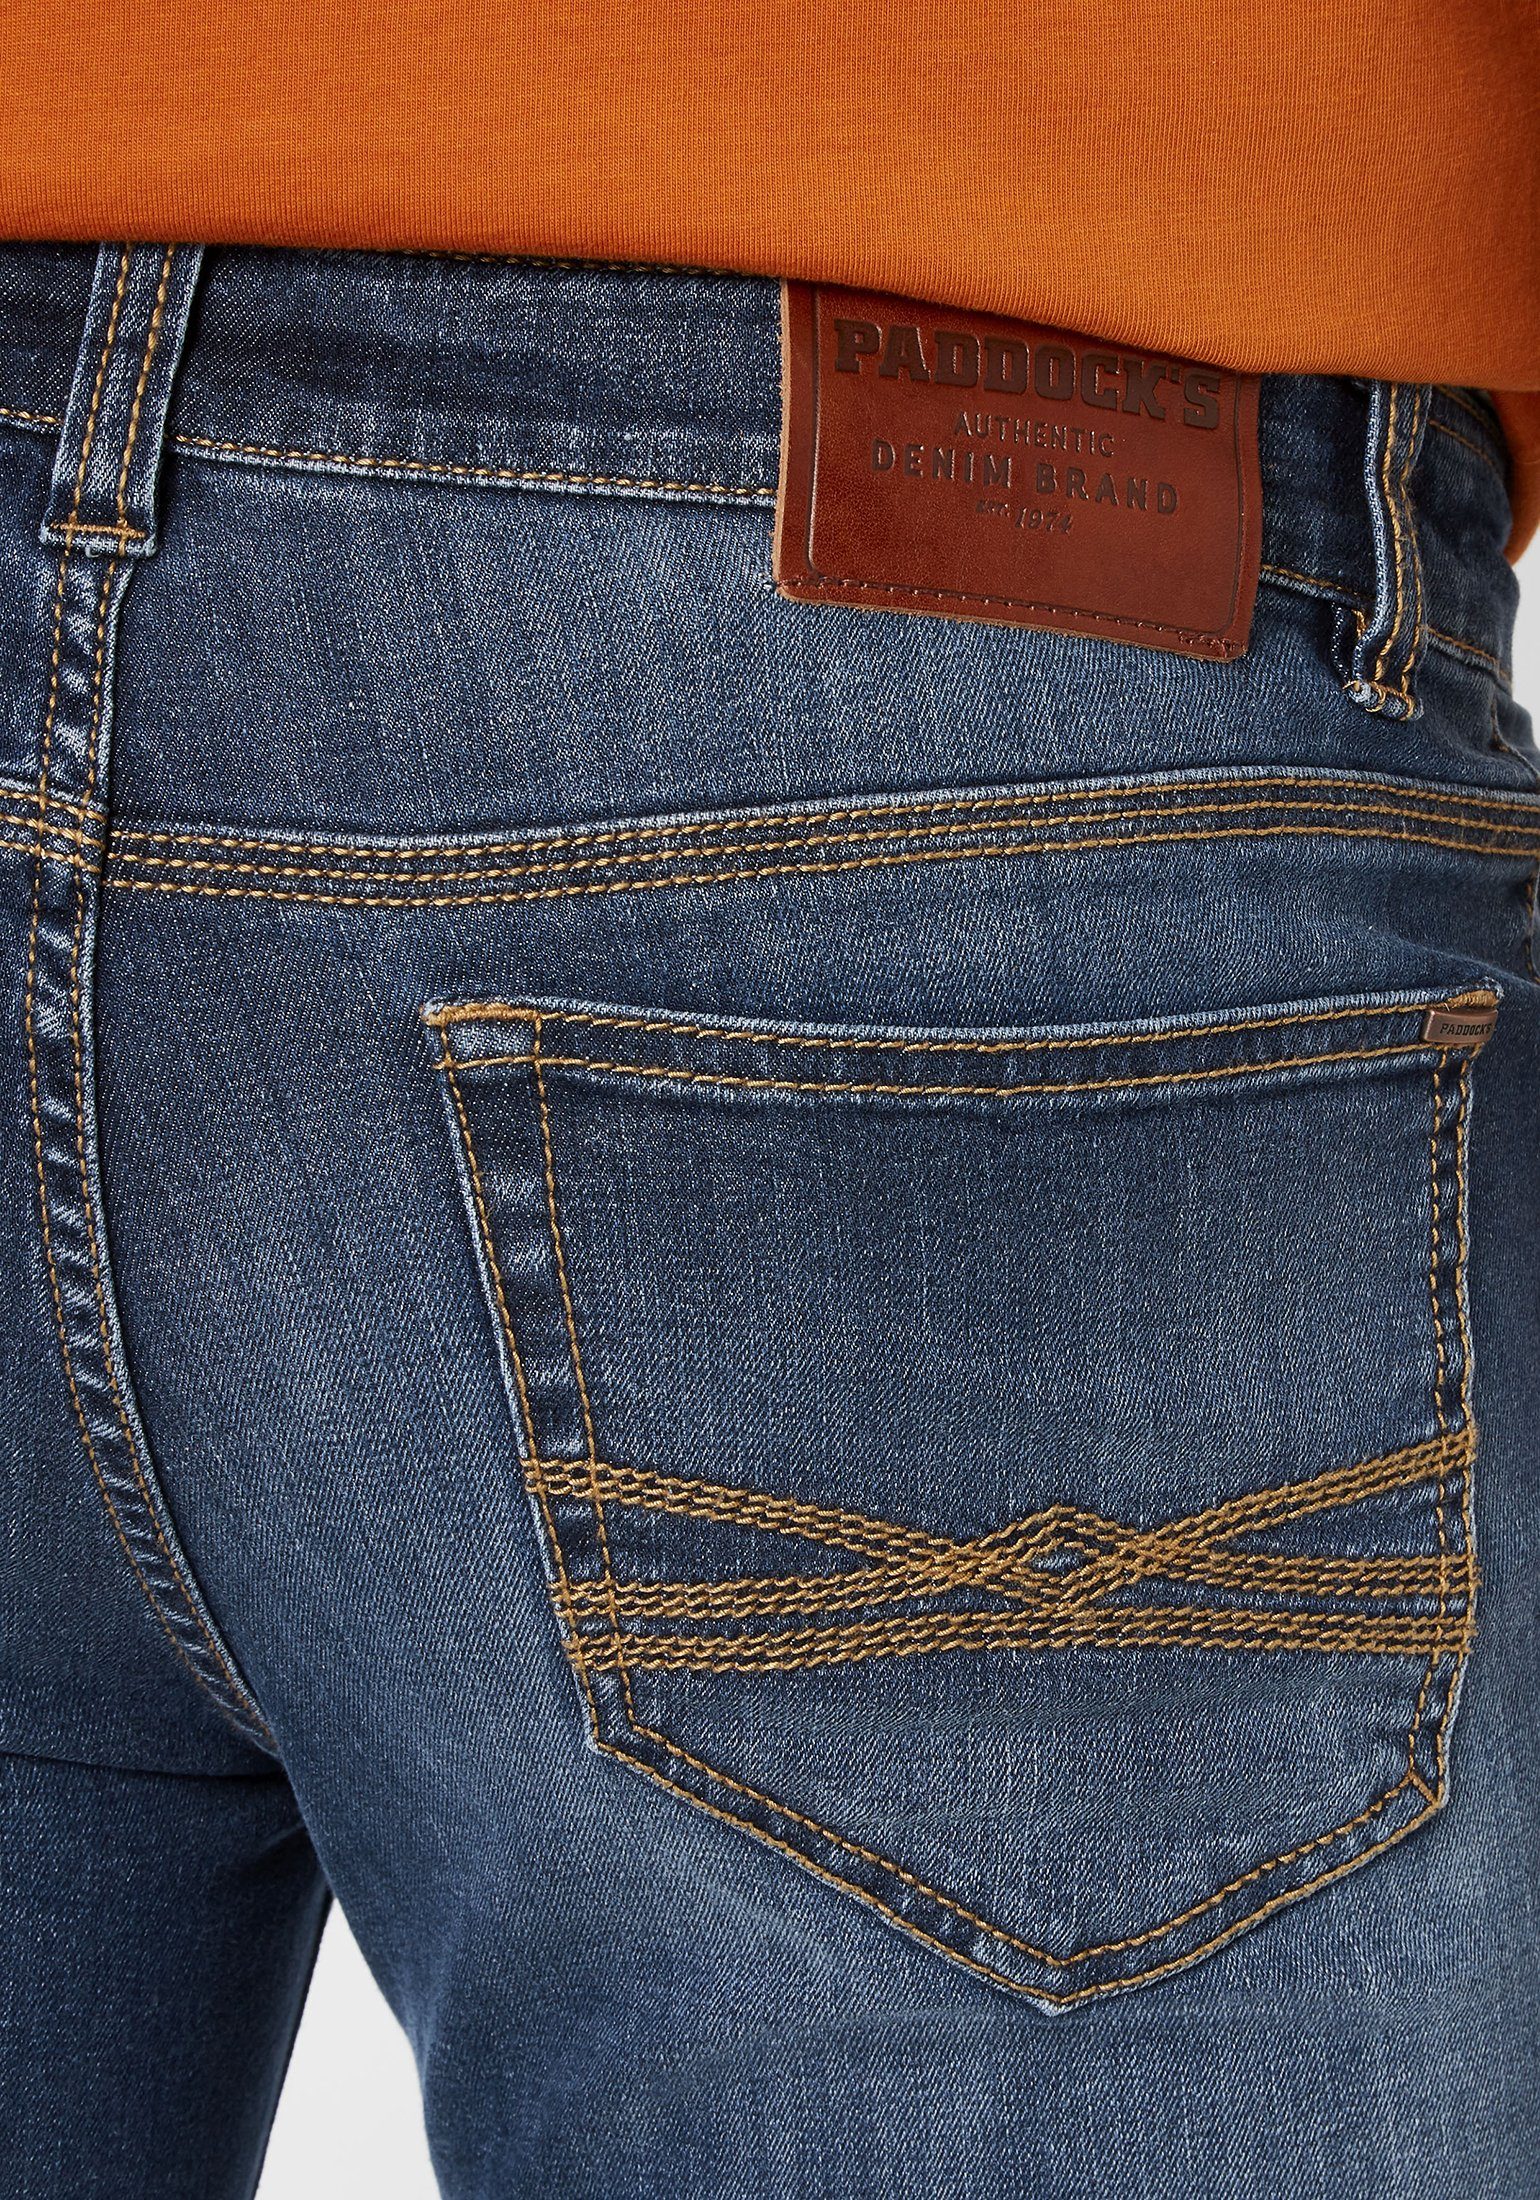 Paddock's 5-Pocket-Jeans DEAN moderne Slim-Fit Denim Jeans medium blue